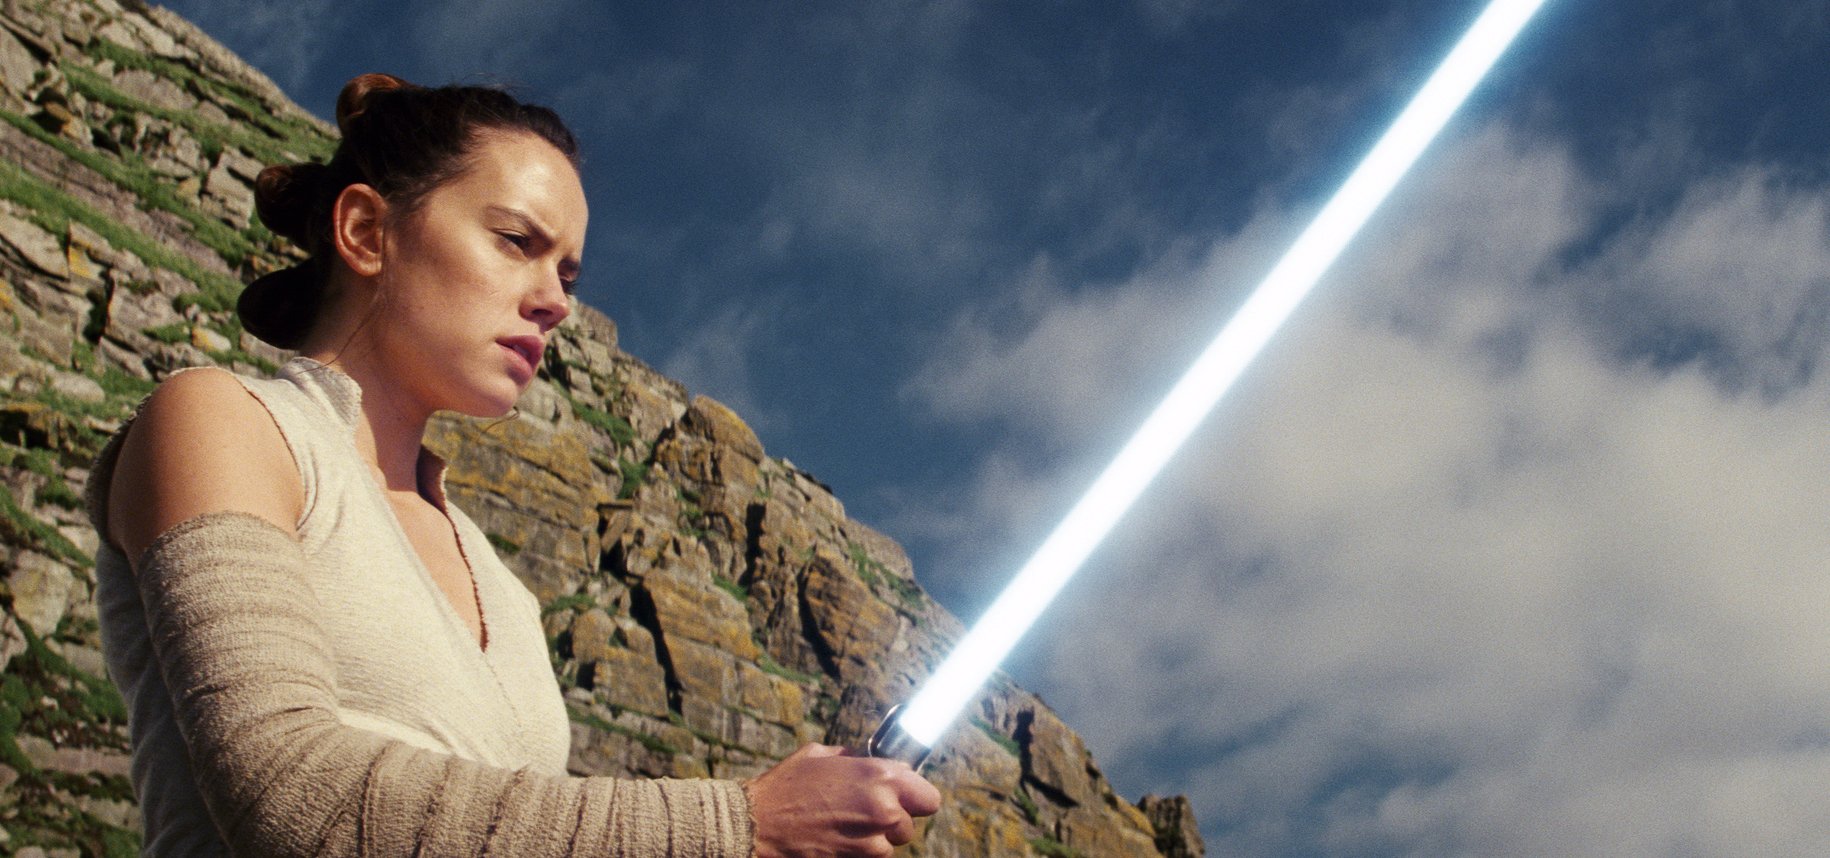 La última trilogía de Star Wars llega a su punto culminante con “El ascenso de Skywalker” (Tráiler)